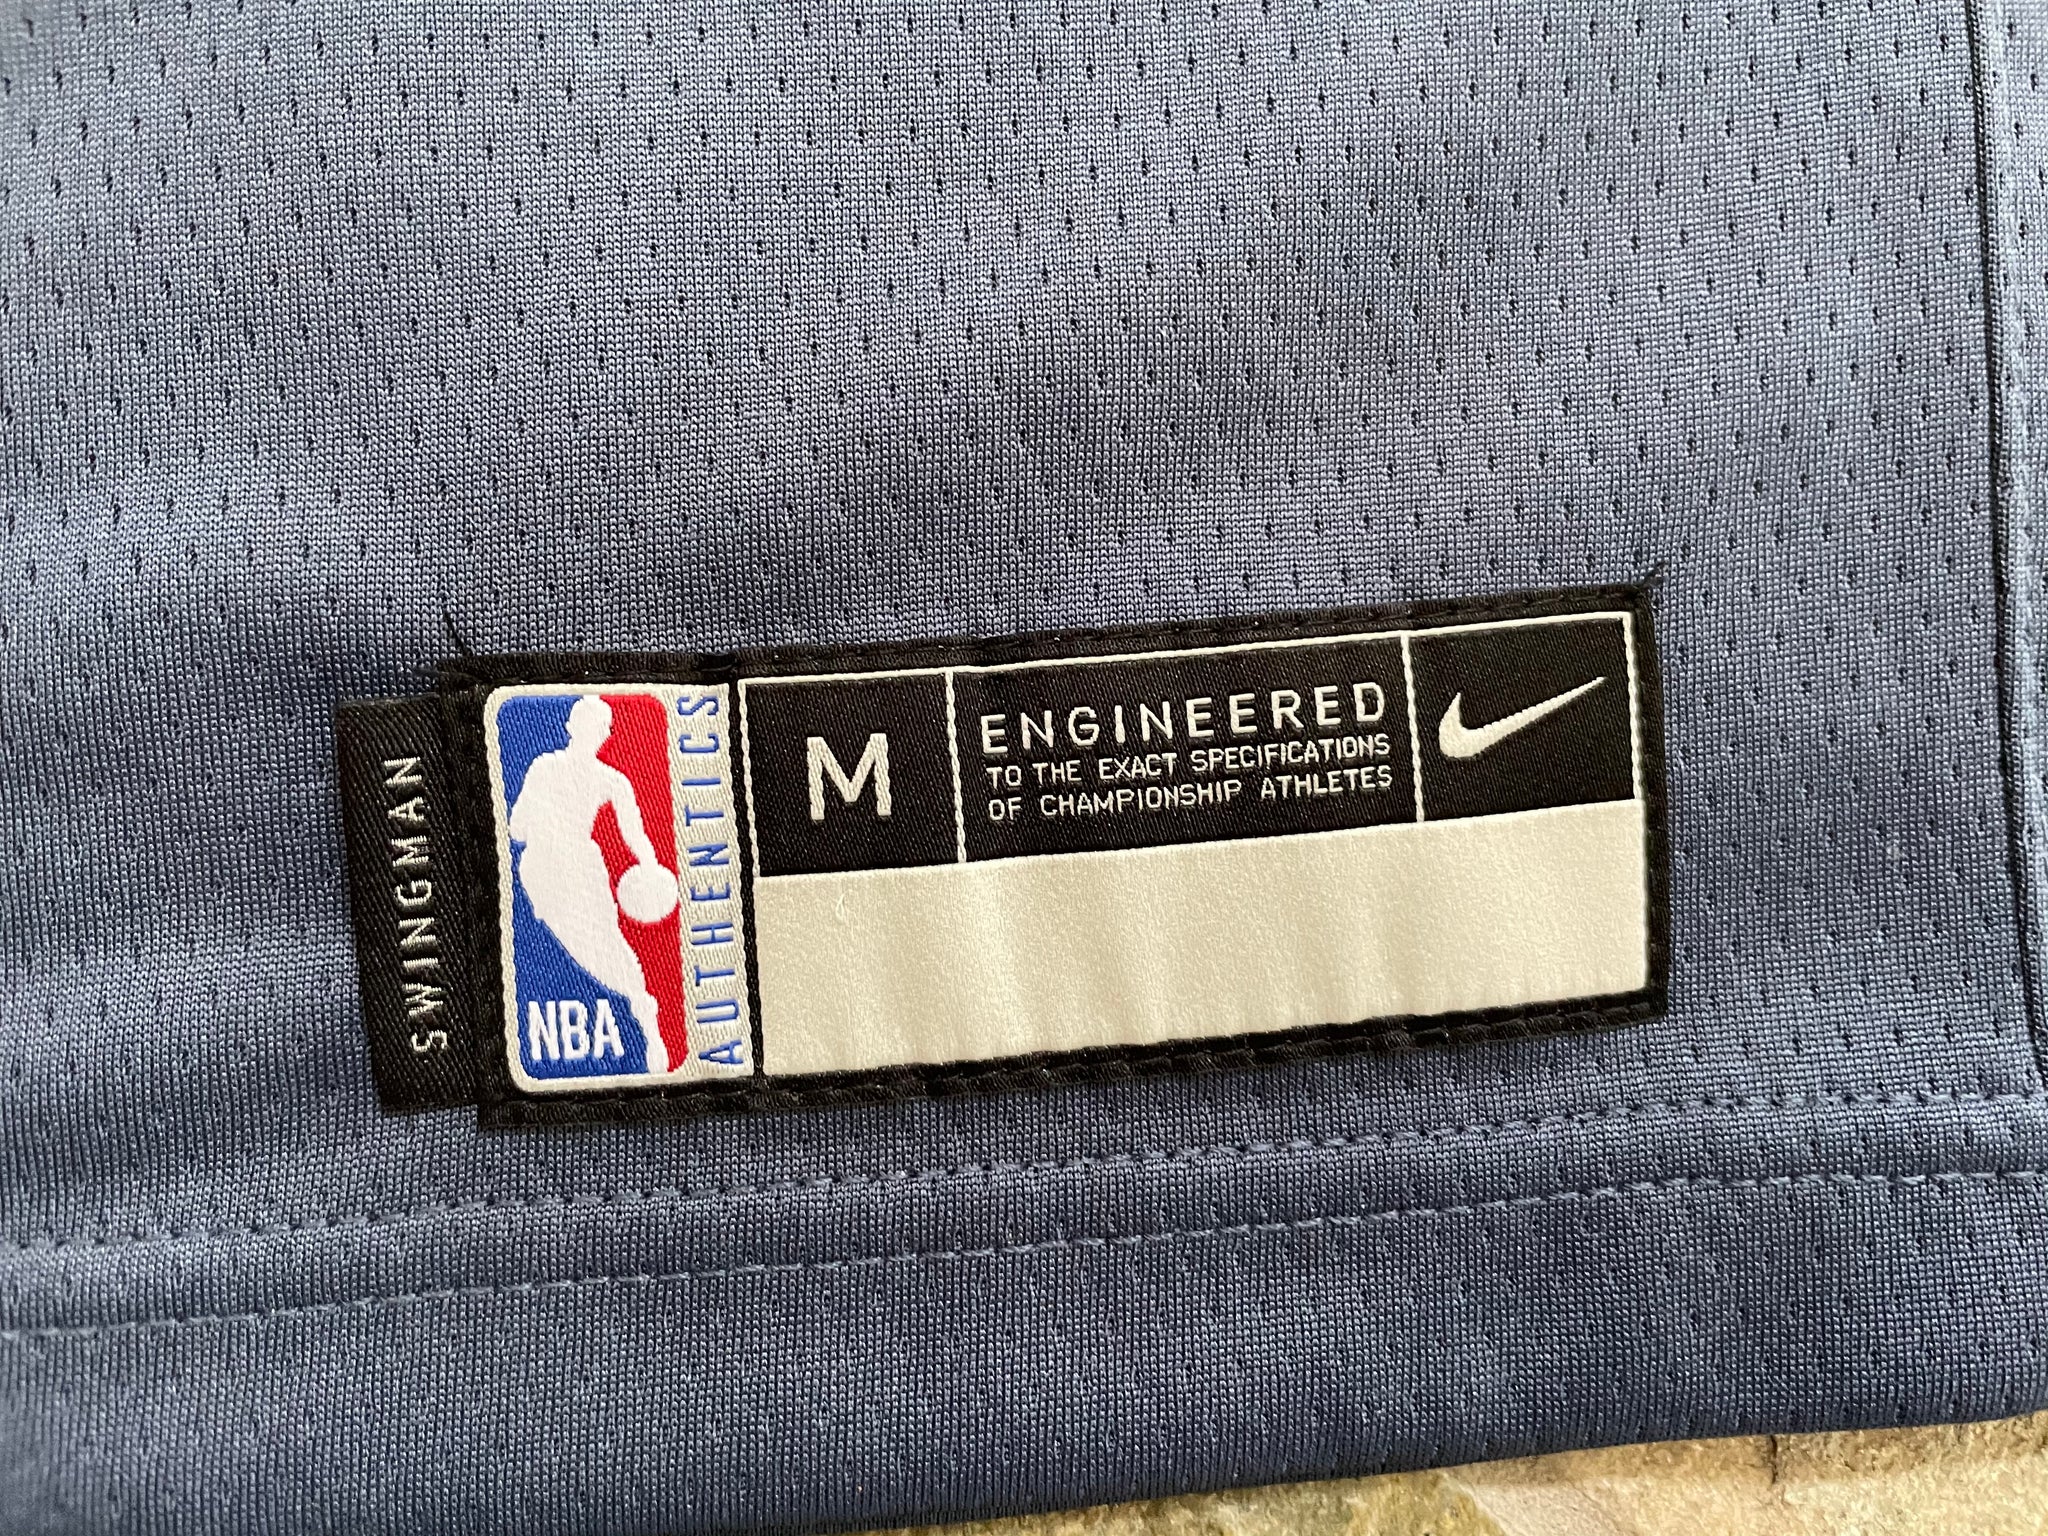 Nike, Basketball Jersey Label